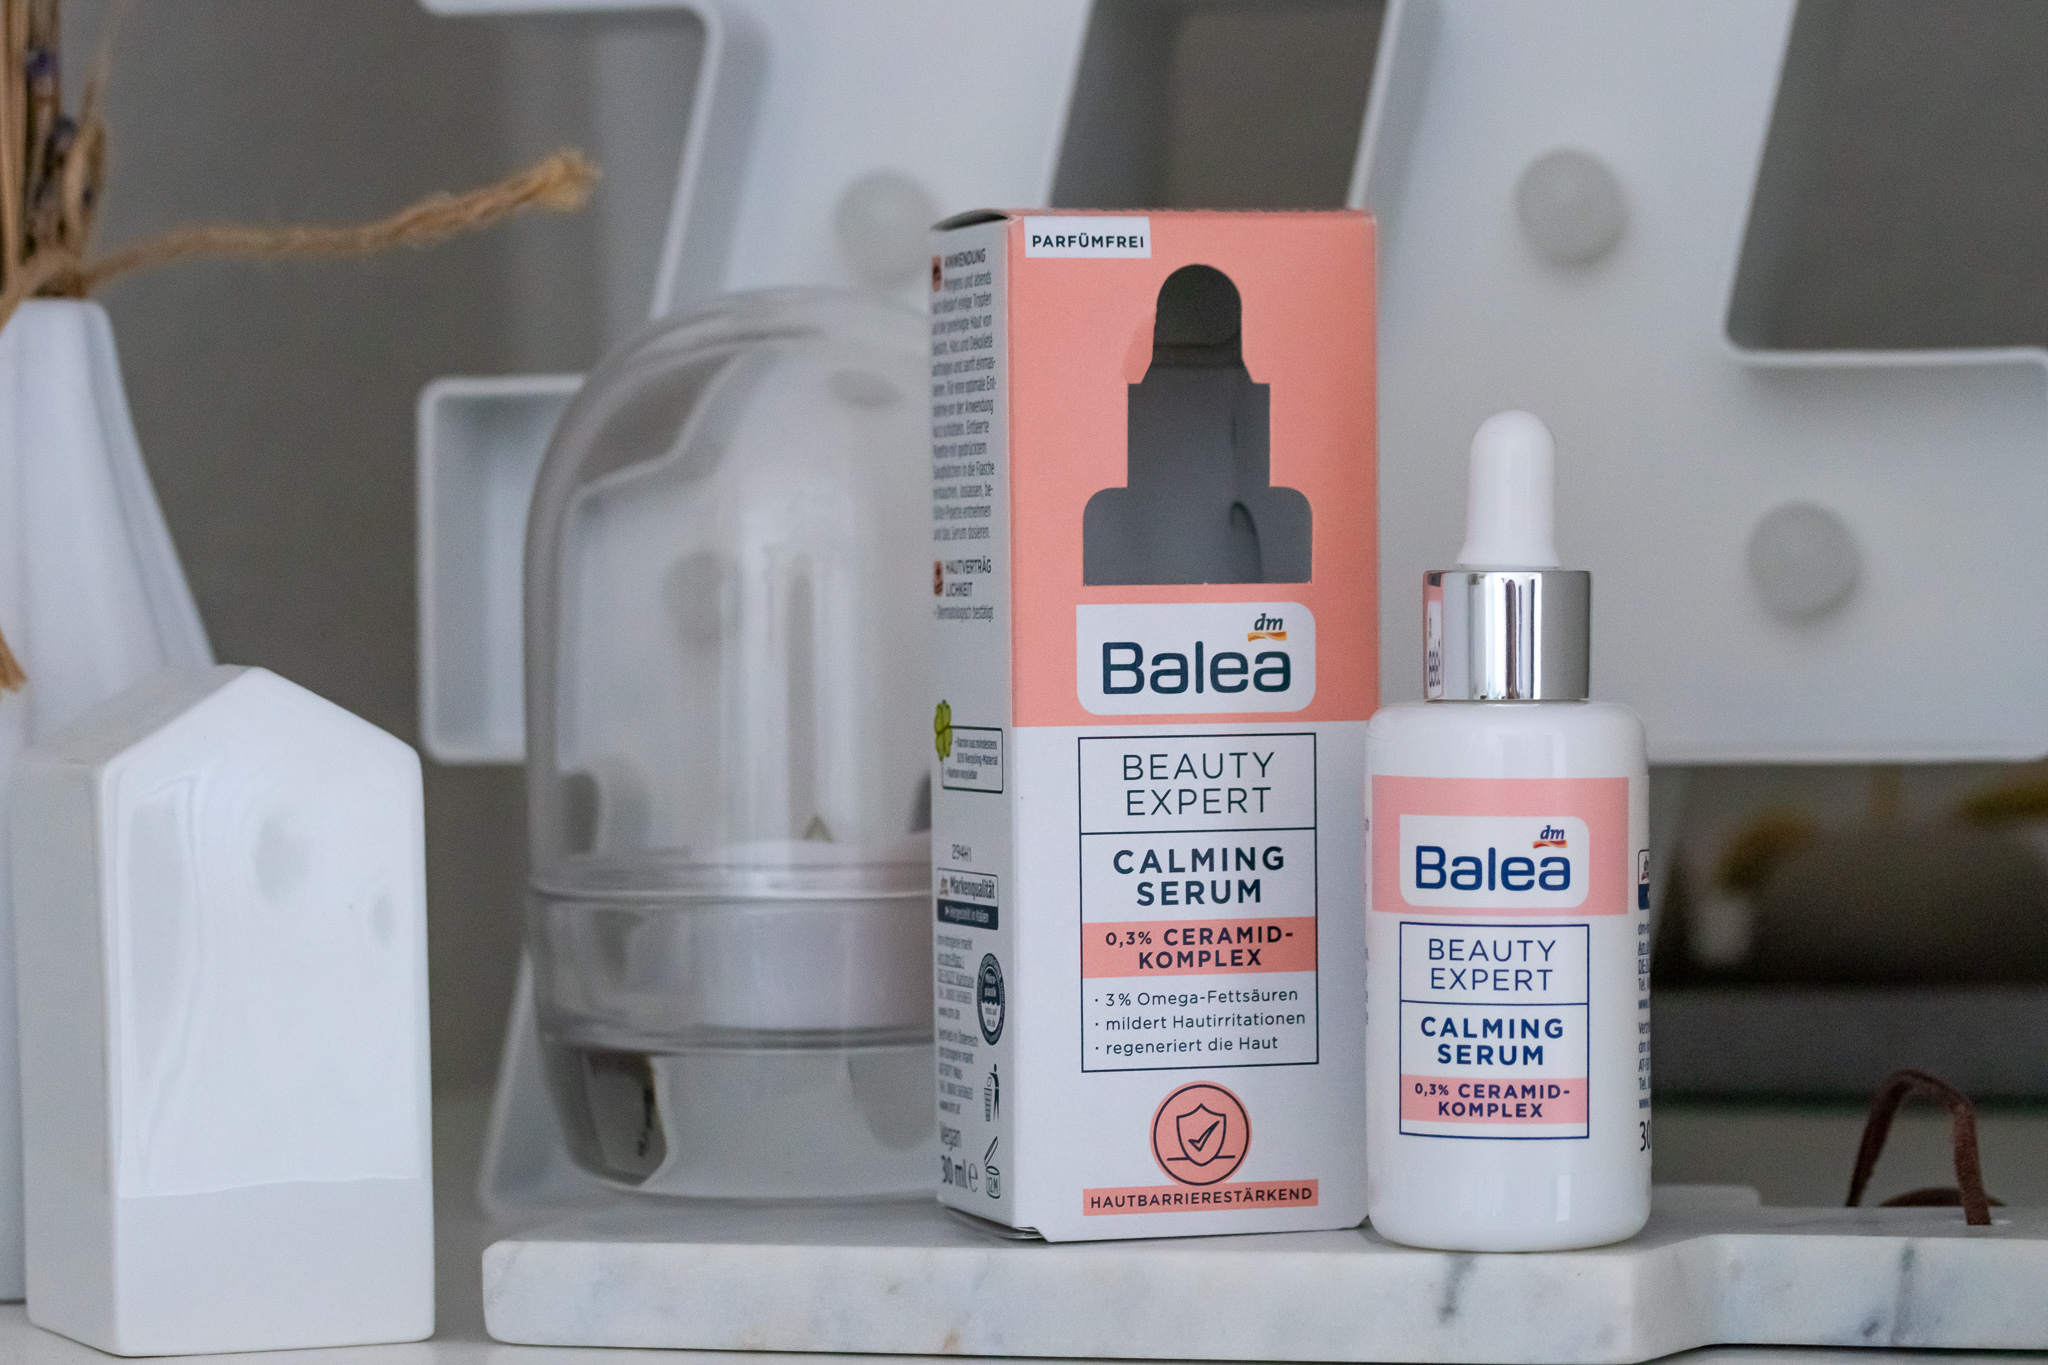 Balea Beauty Expert Calming Serum